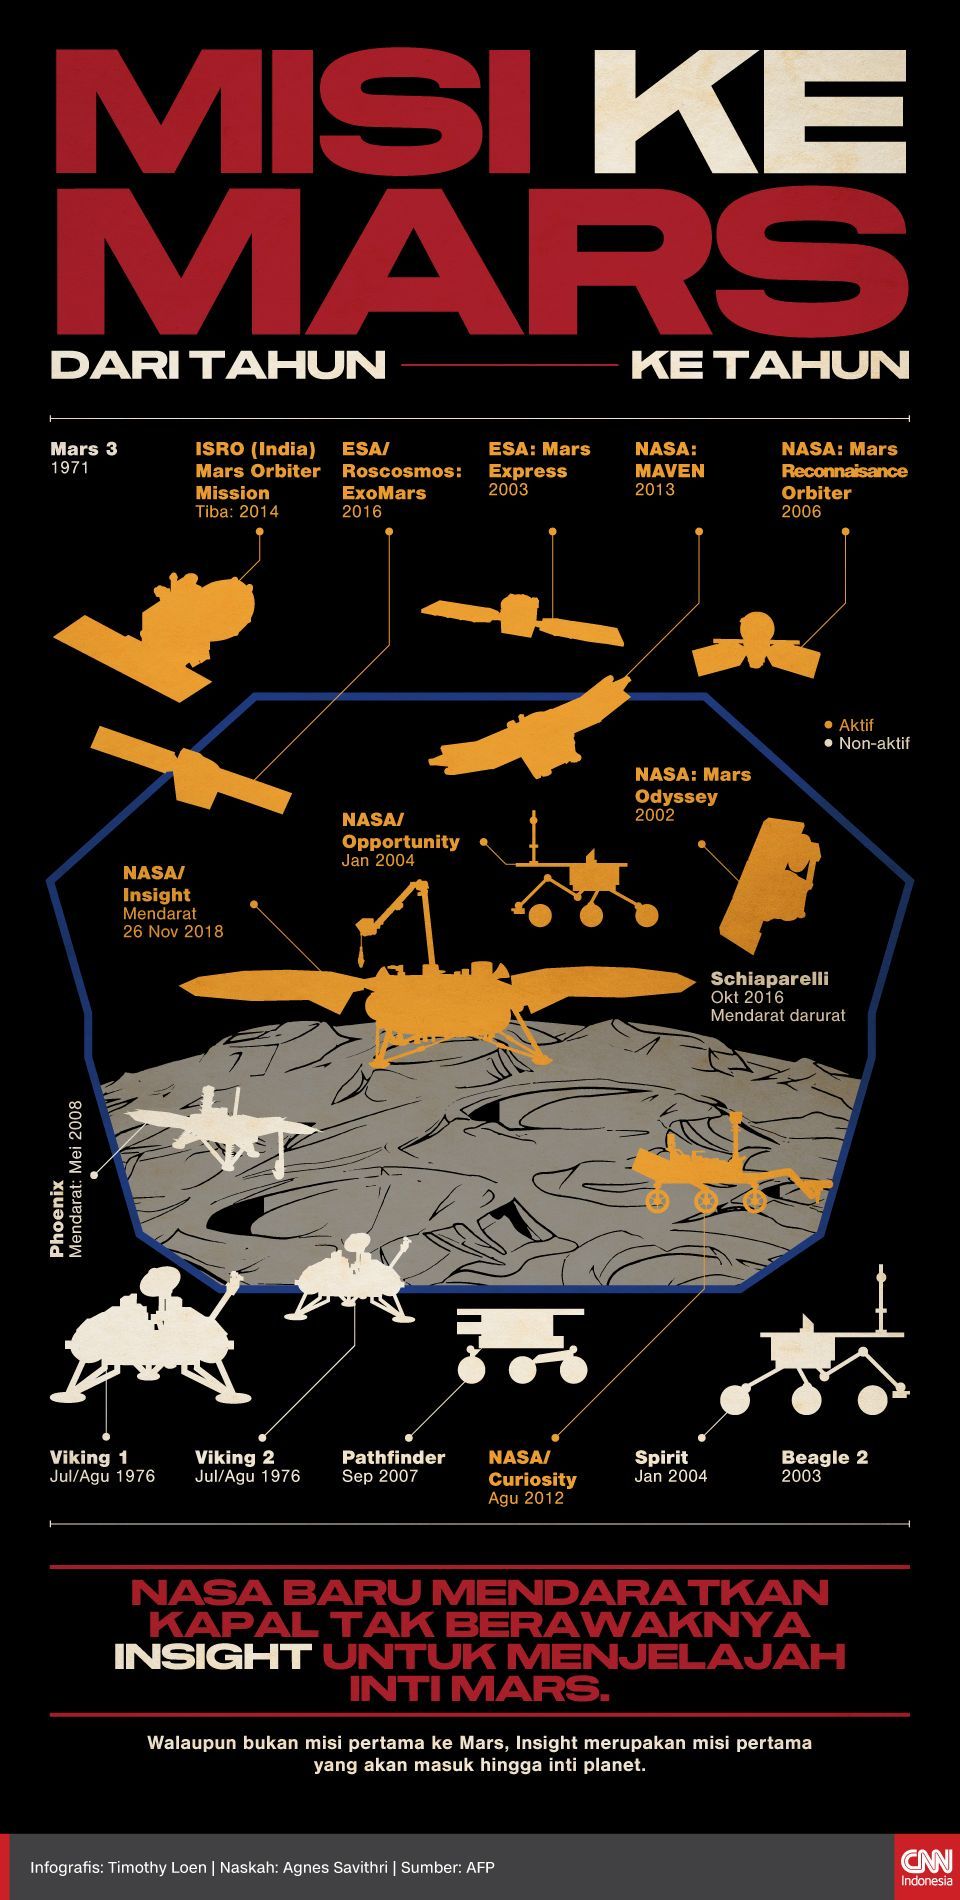 Infografis Misi ke Mars berasal dari Tahun ke Tahun